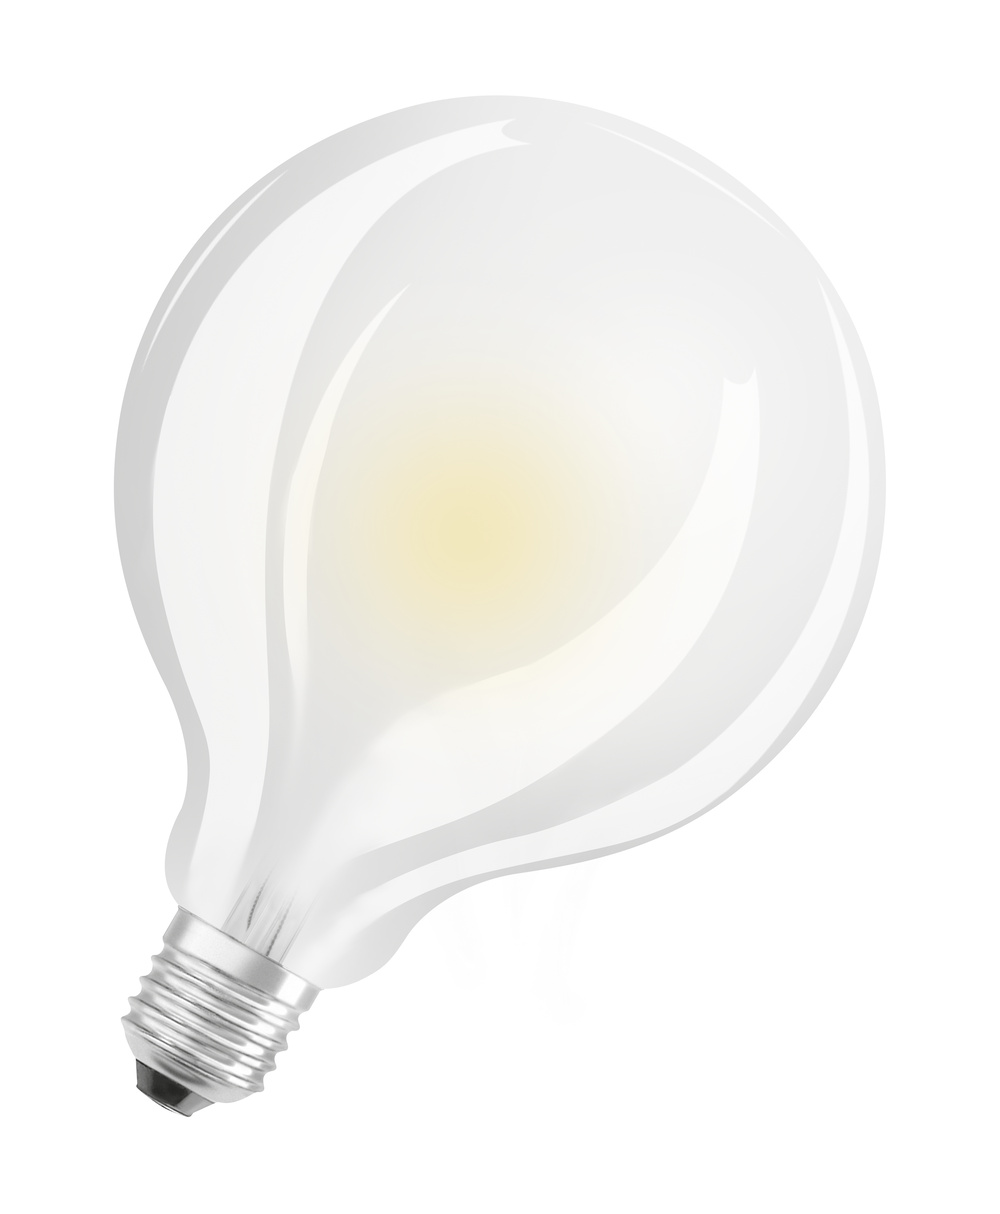 Ledvance LED-Leuchtmittel LED CLASSIC GLOBE P 6.5W 827 FIL FR E27 – 4099854062384 – Ersatz für 60 W - 4099854062384